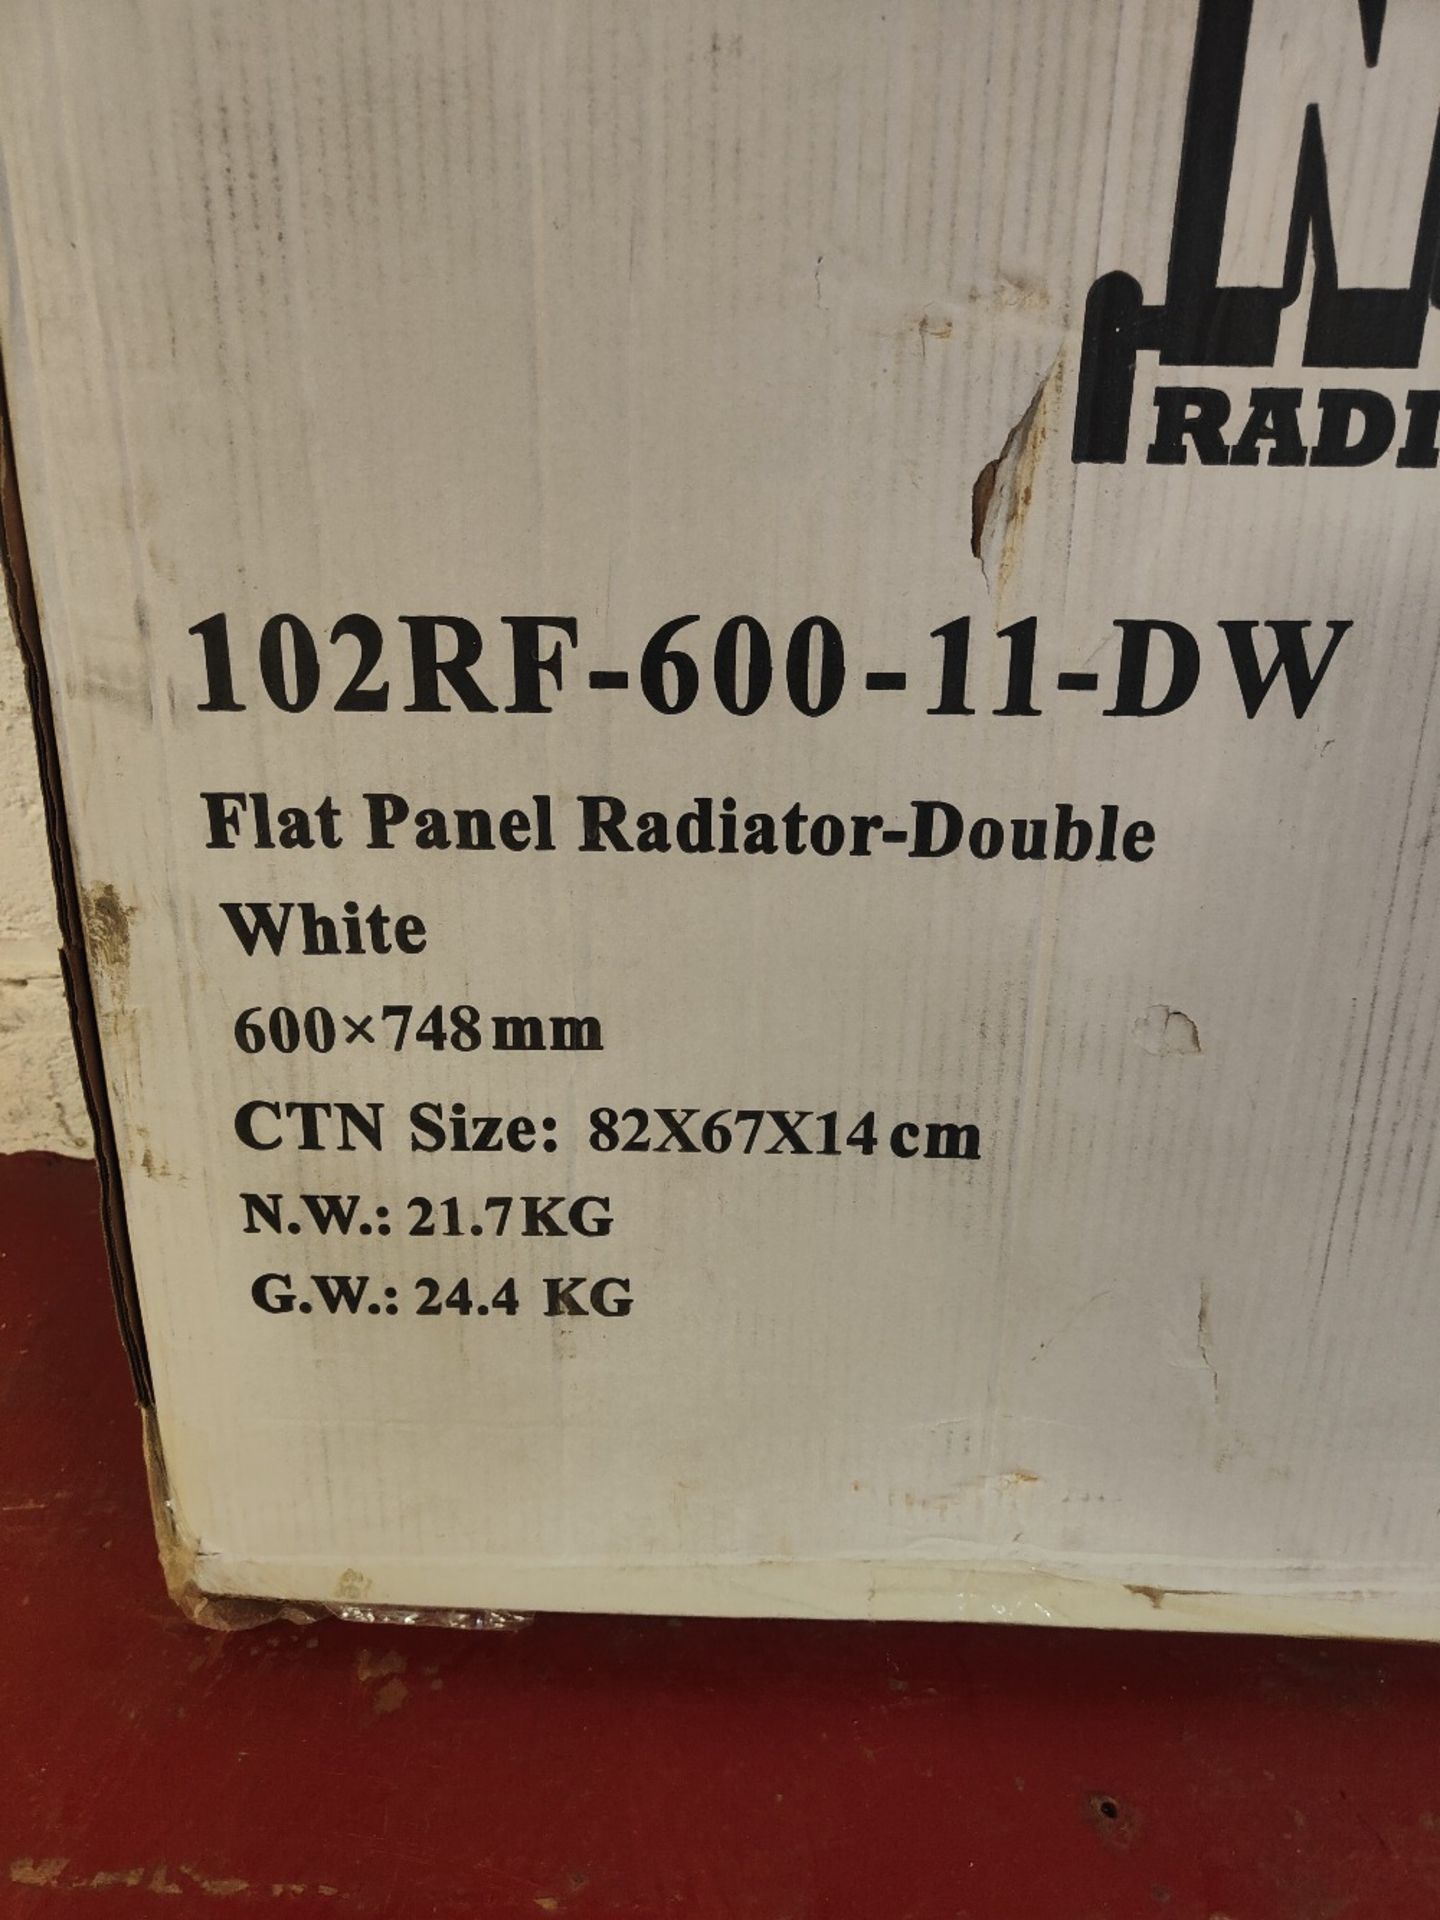 NRG Flat Panel Double Radiator - Image 3 of 3